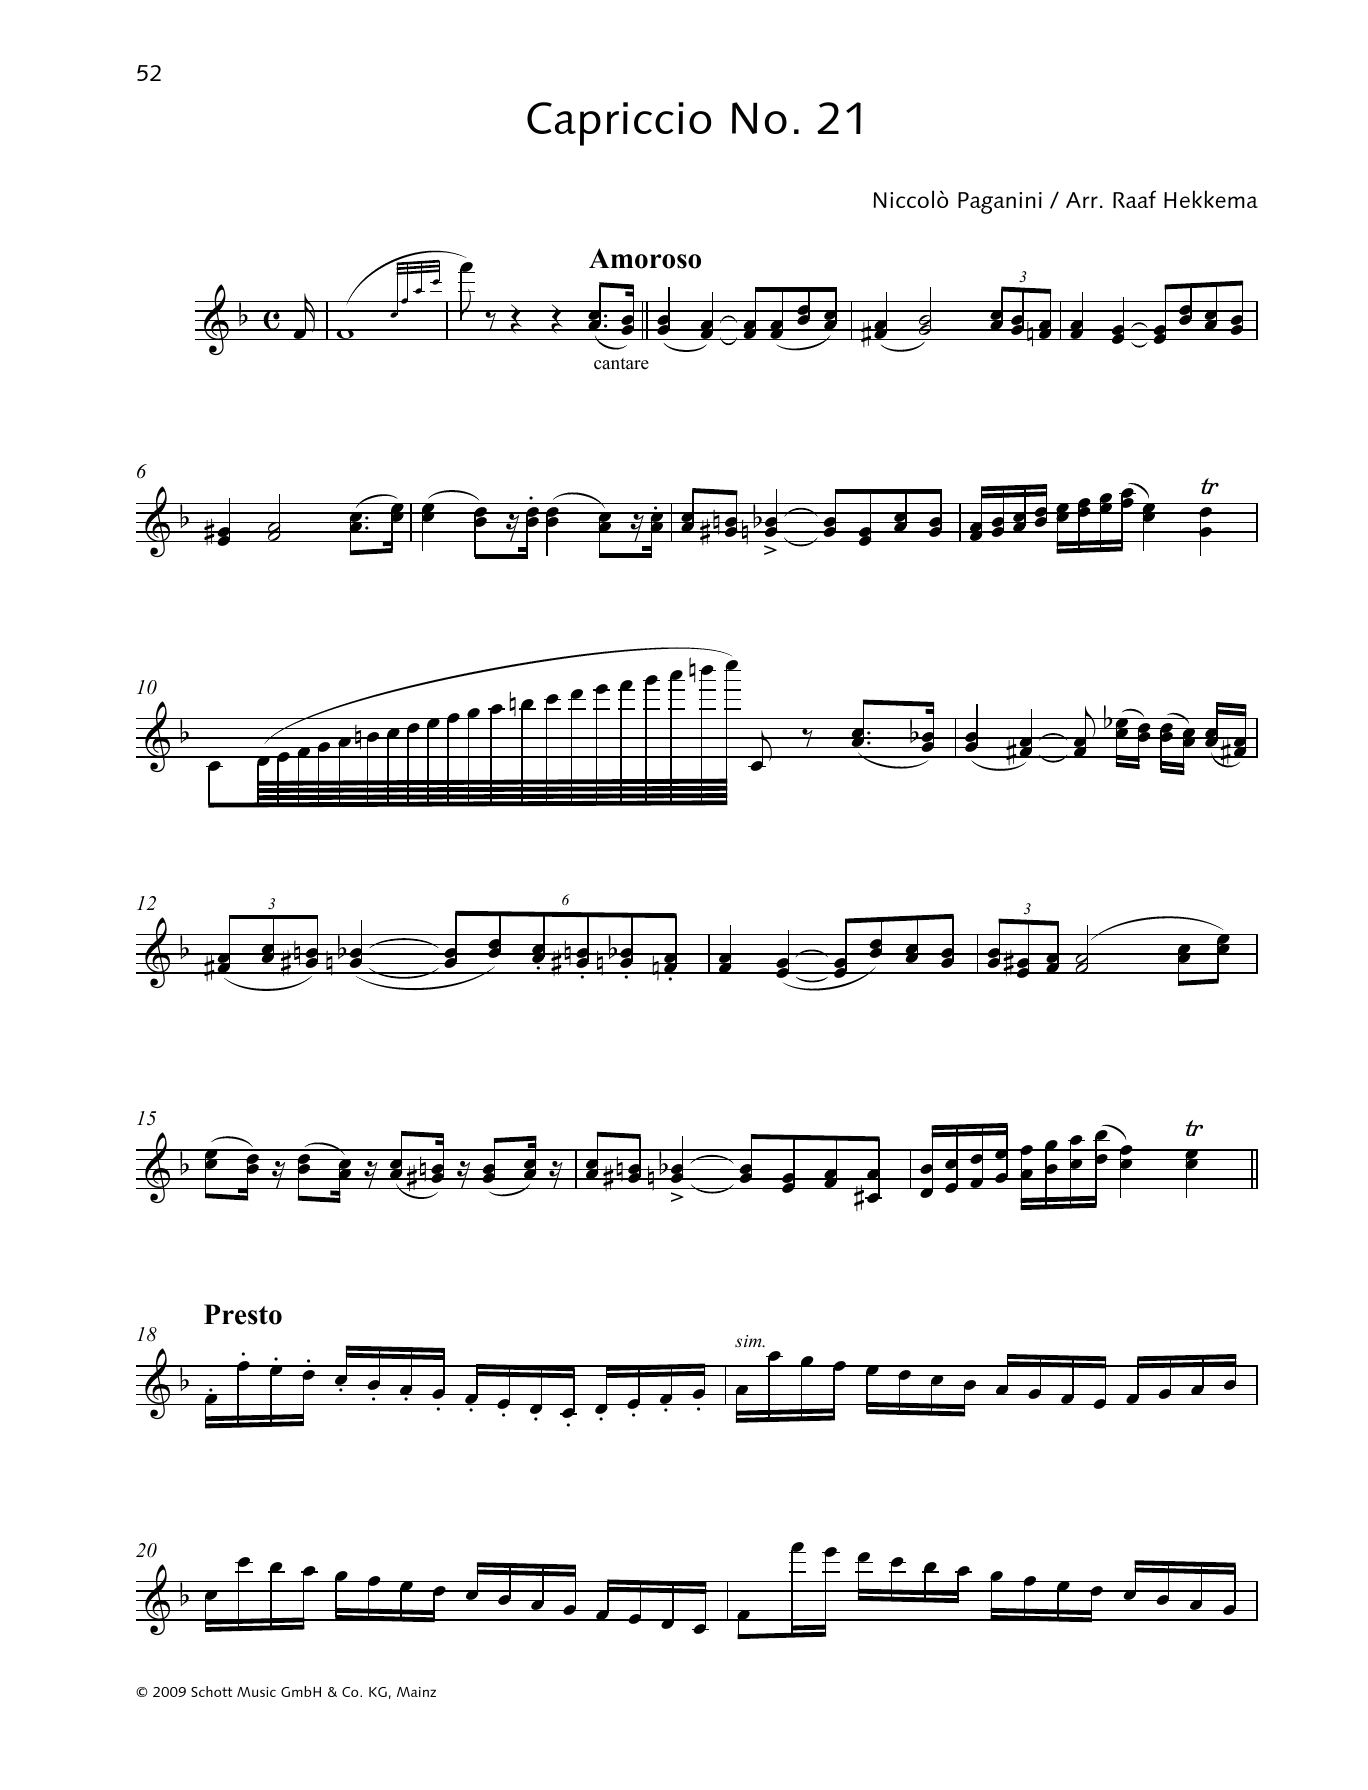 Download Niccolo Paganini Capriccio No. 21 Sheet Music